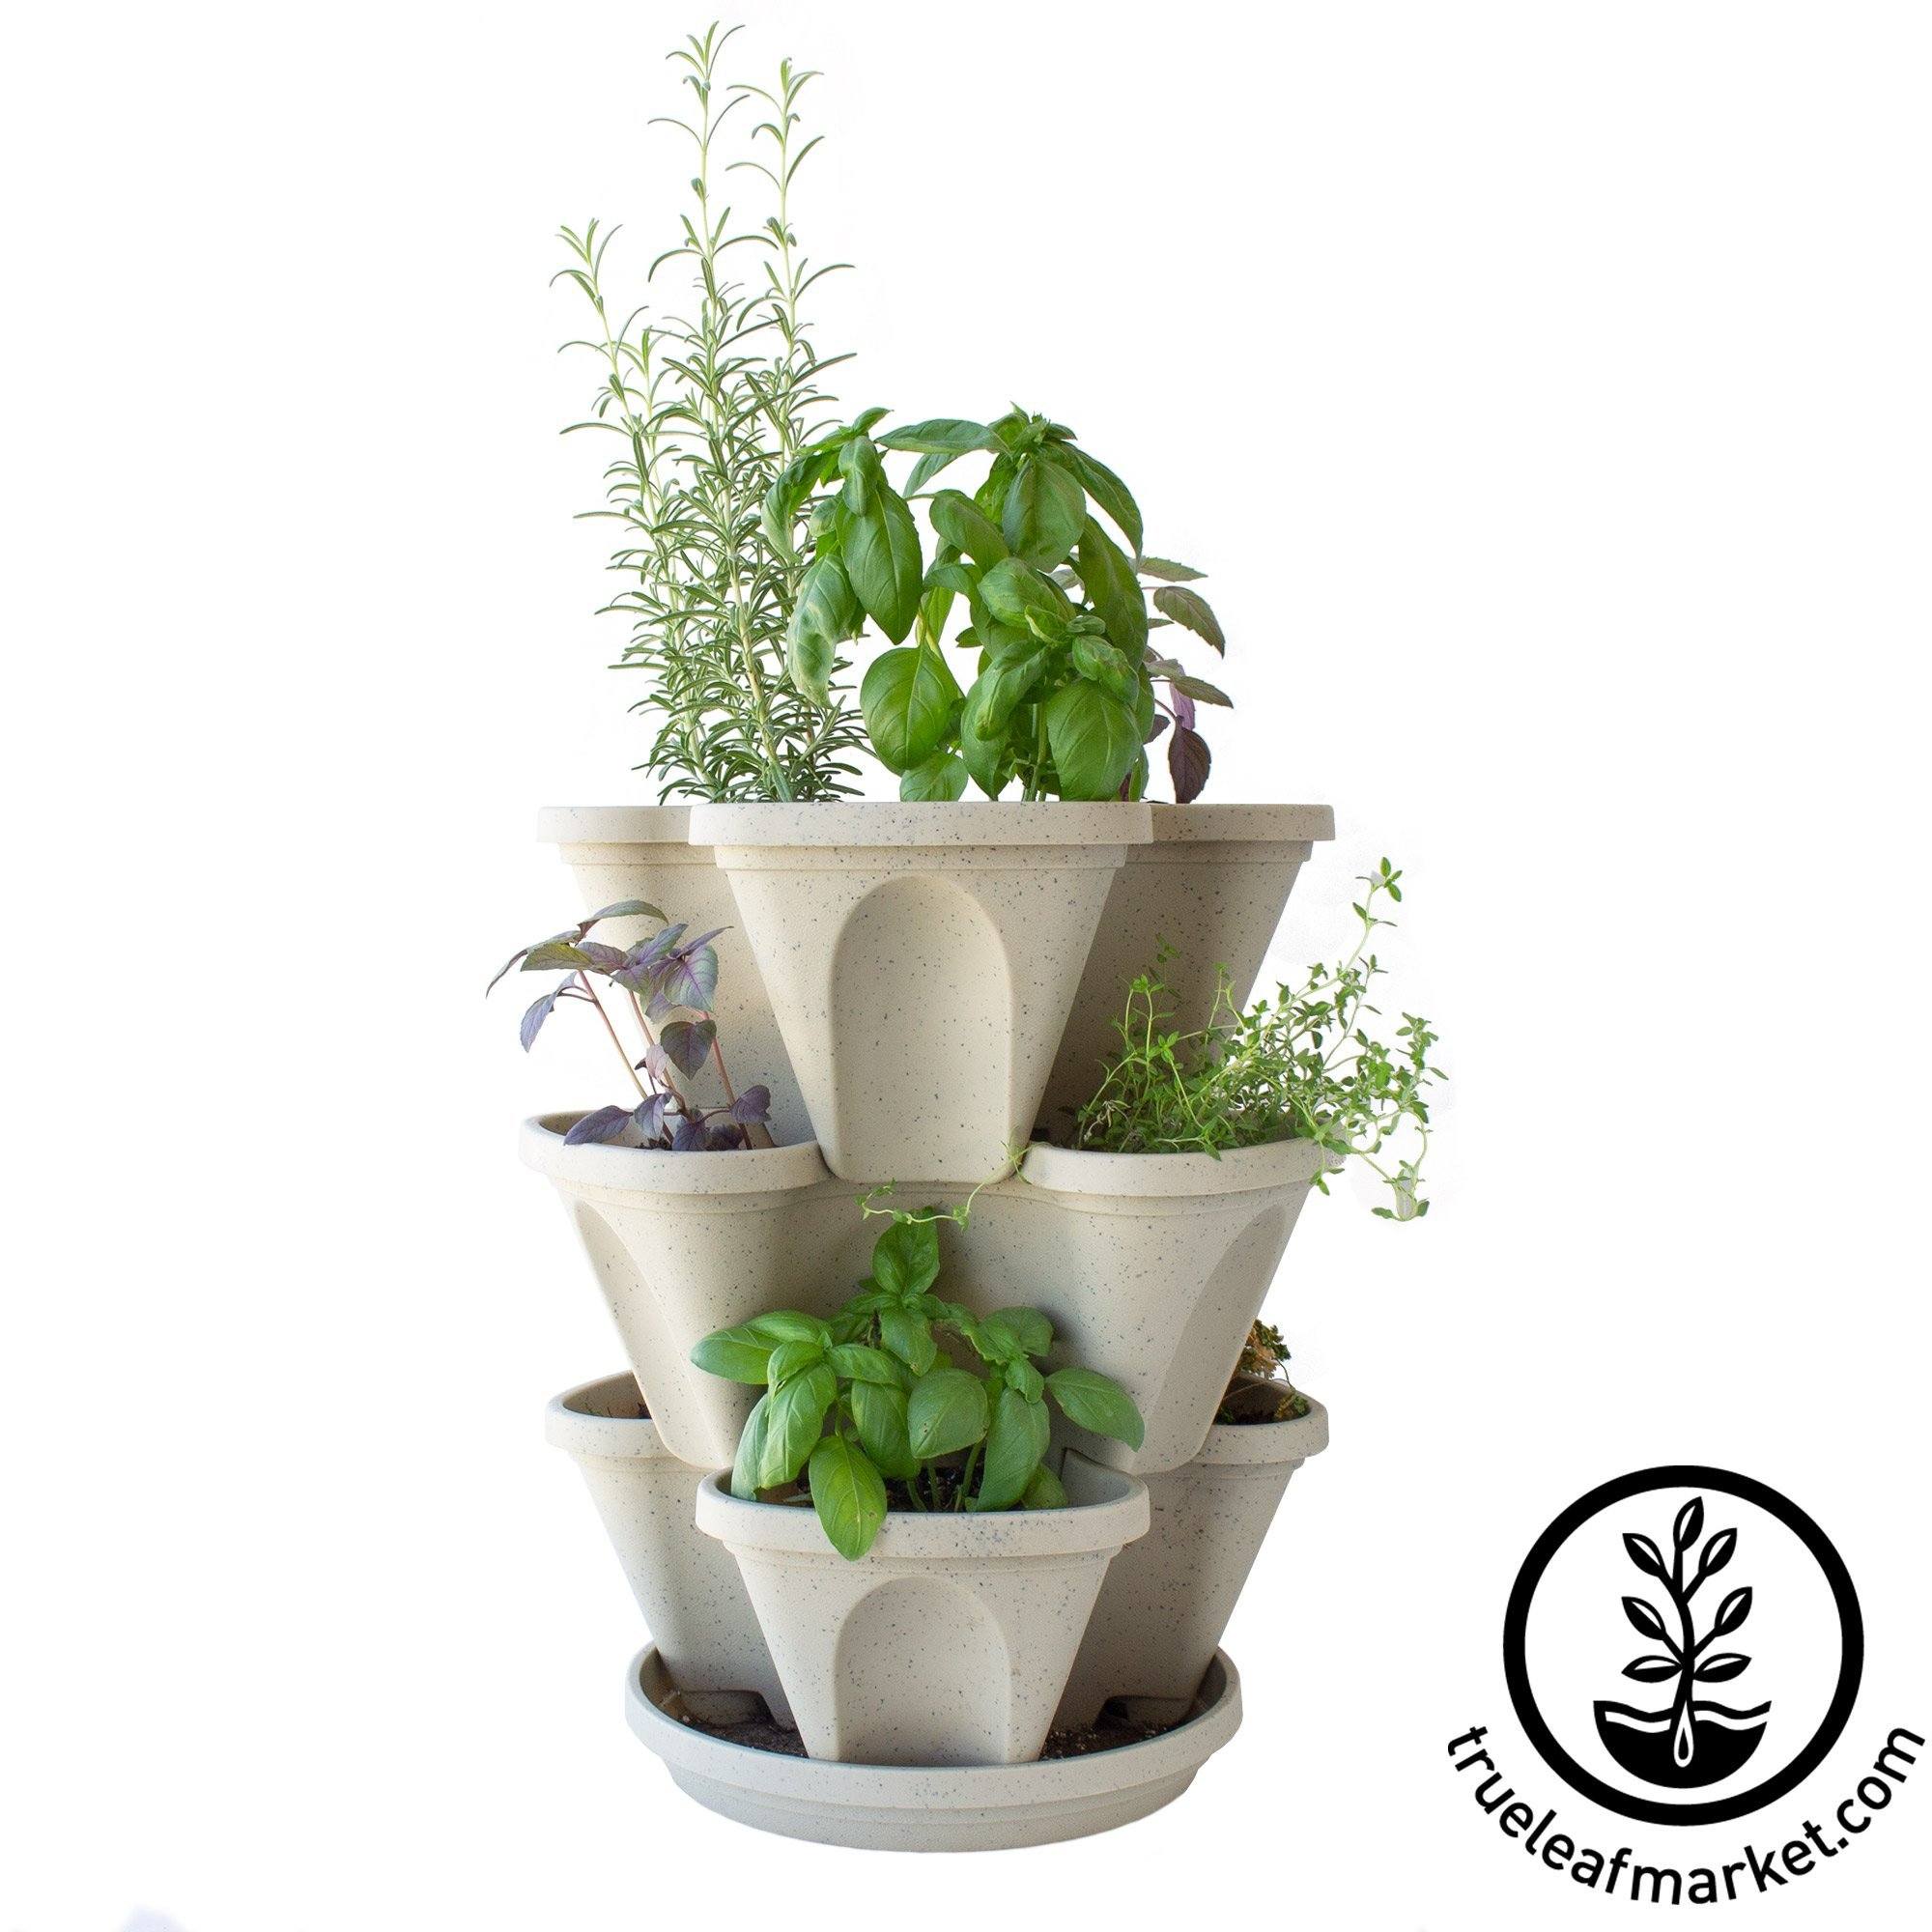 Garden Stacker Planter Culinary Herb Garden Kit - Color: Terracotta -  Stackable / Hangable Planter Pot - Indoor / Outdoor - 12 Seed Packs:  Parsley